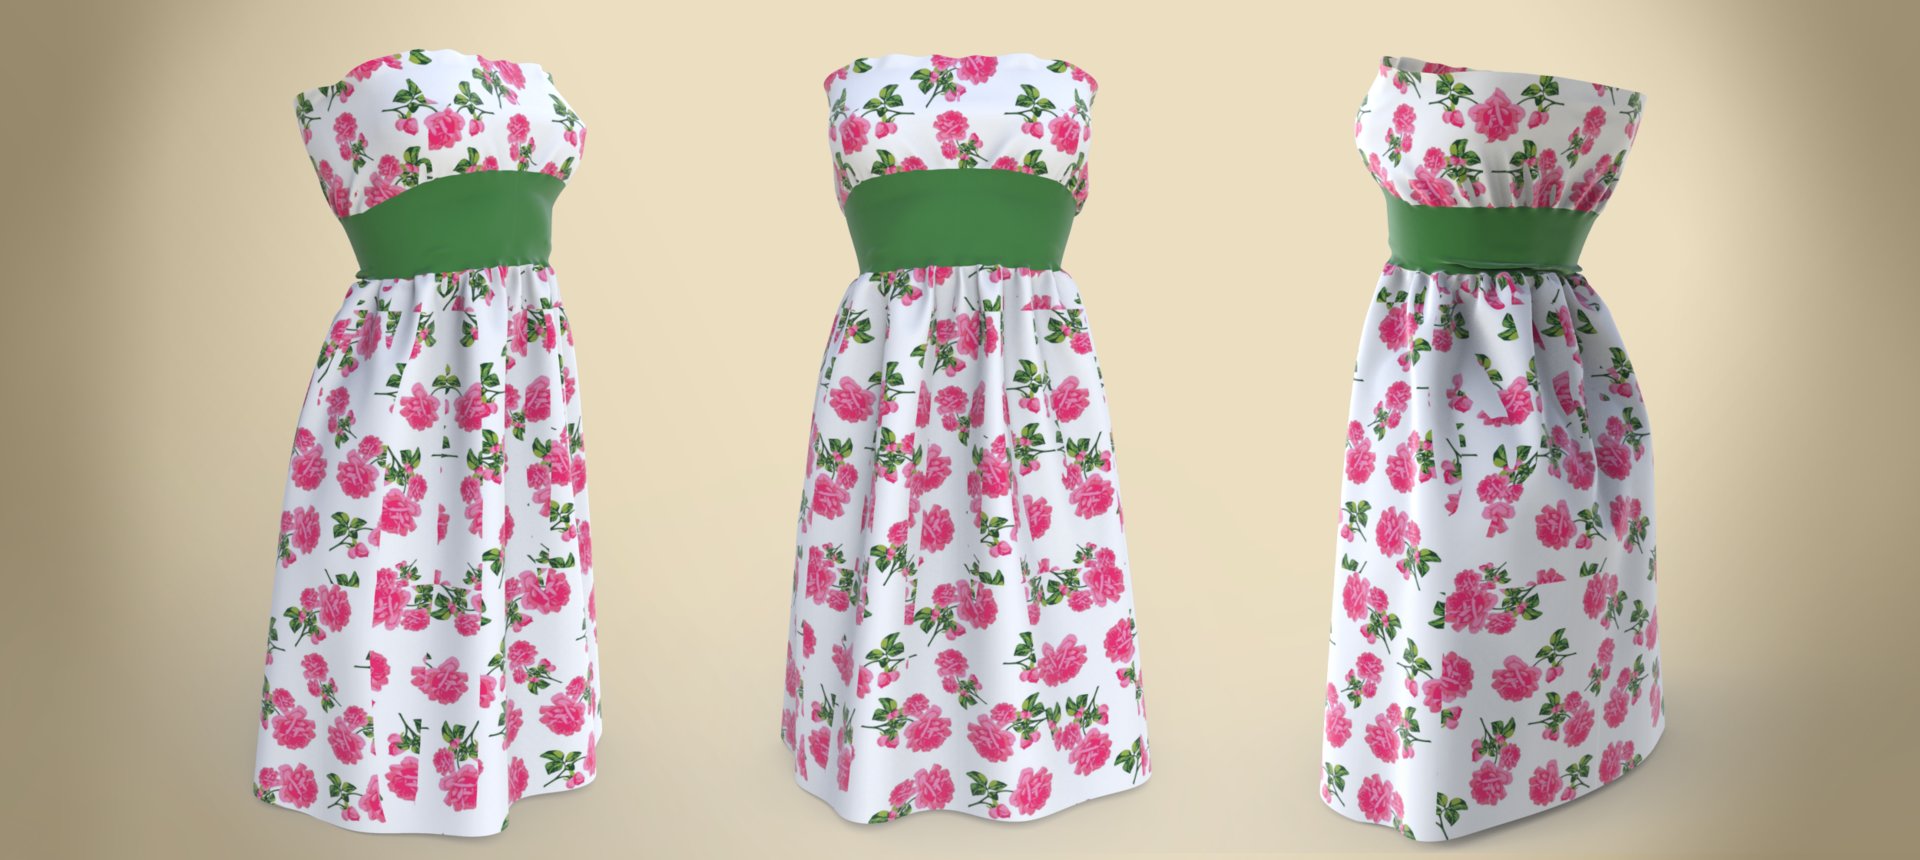 denis-mushroom-summer-dress.jpg?1439468514